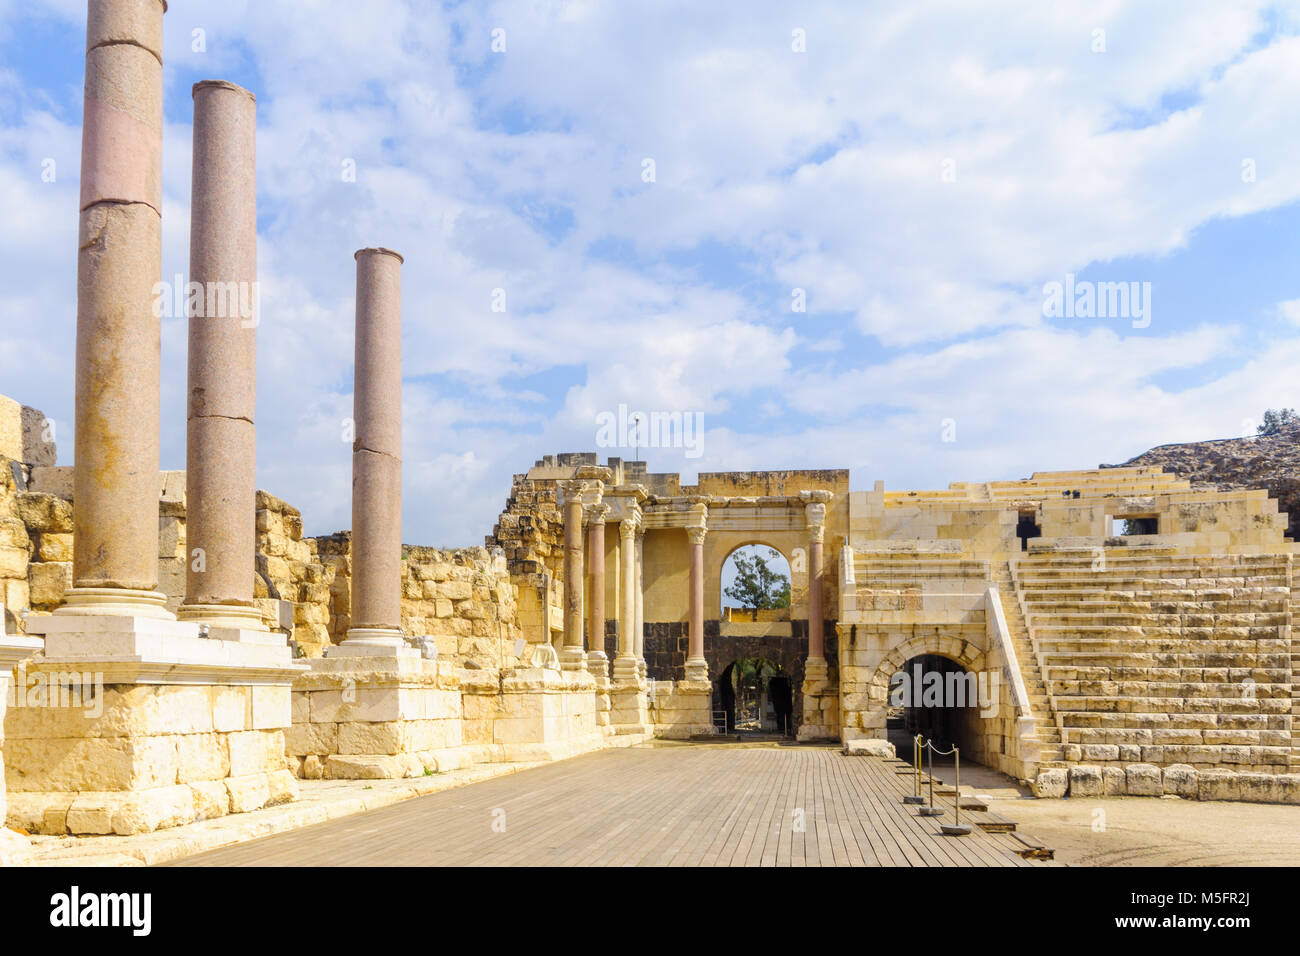 Vue sur le théâtre romain dans la ville antique de Bet Shean, maintenant un parc national. Le Nord d'Israël Banque D'Images